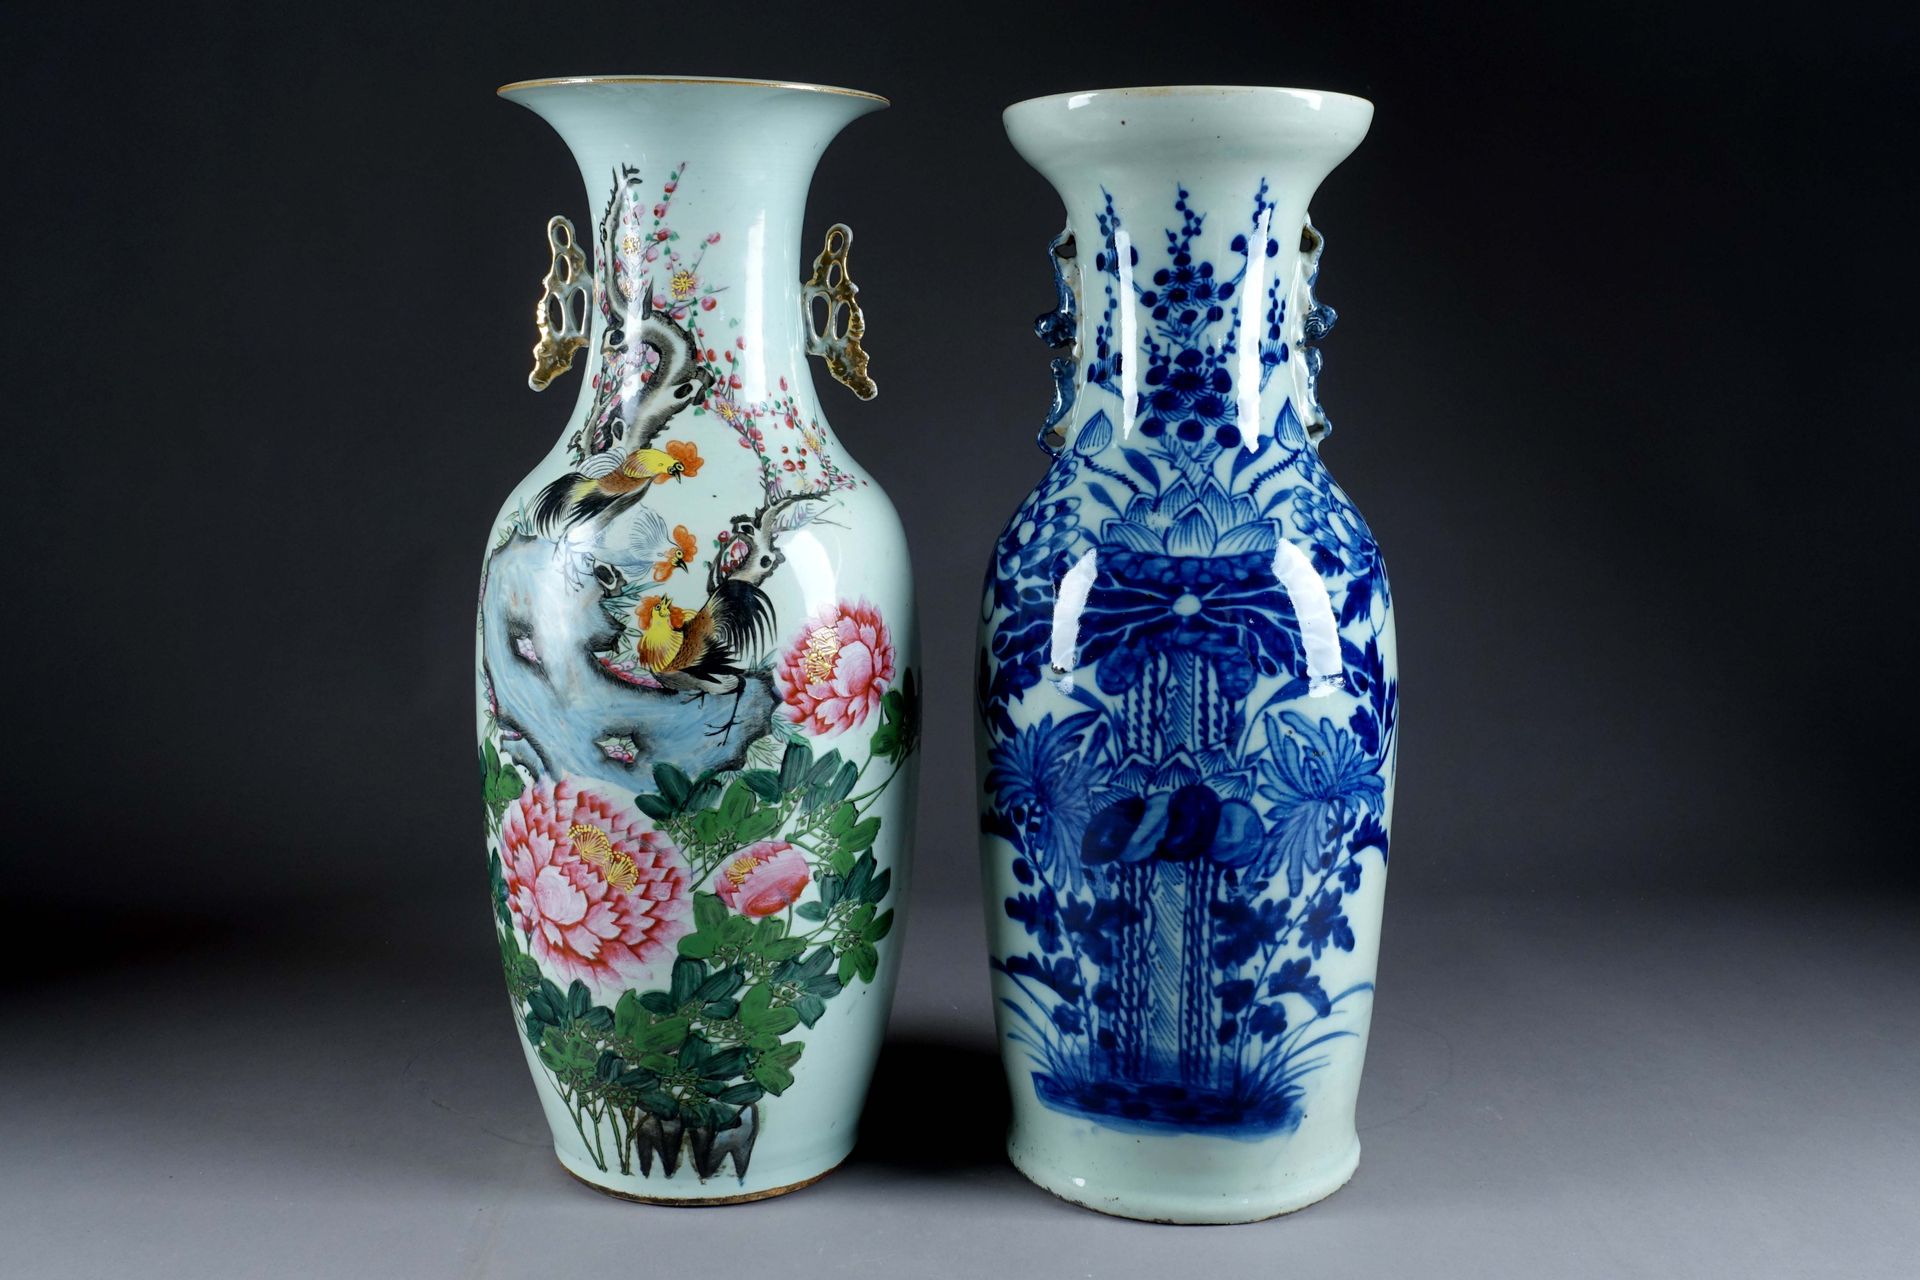 Chine du début du XXe siècle. Two large vases. One with blue enamel vegetal deco&hellip;